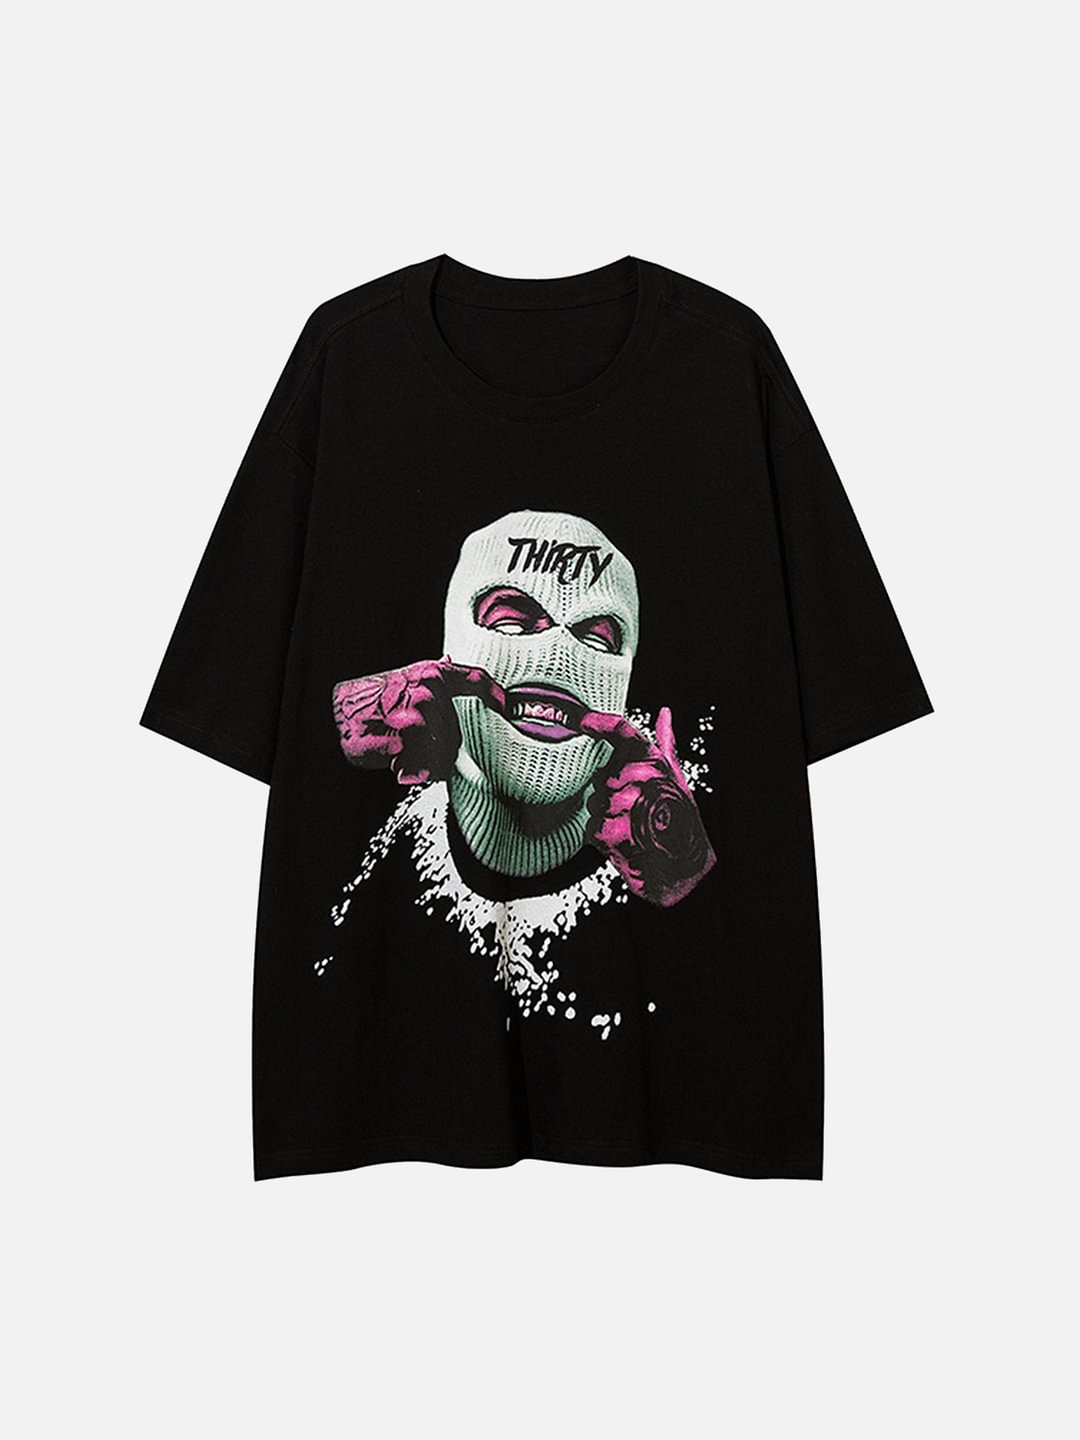 Gangster Print T-shirt / Techwear Club / Techwear